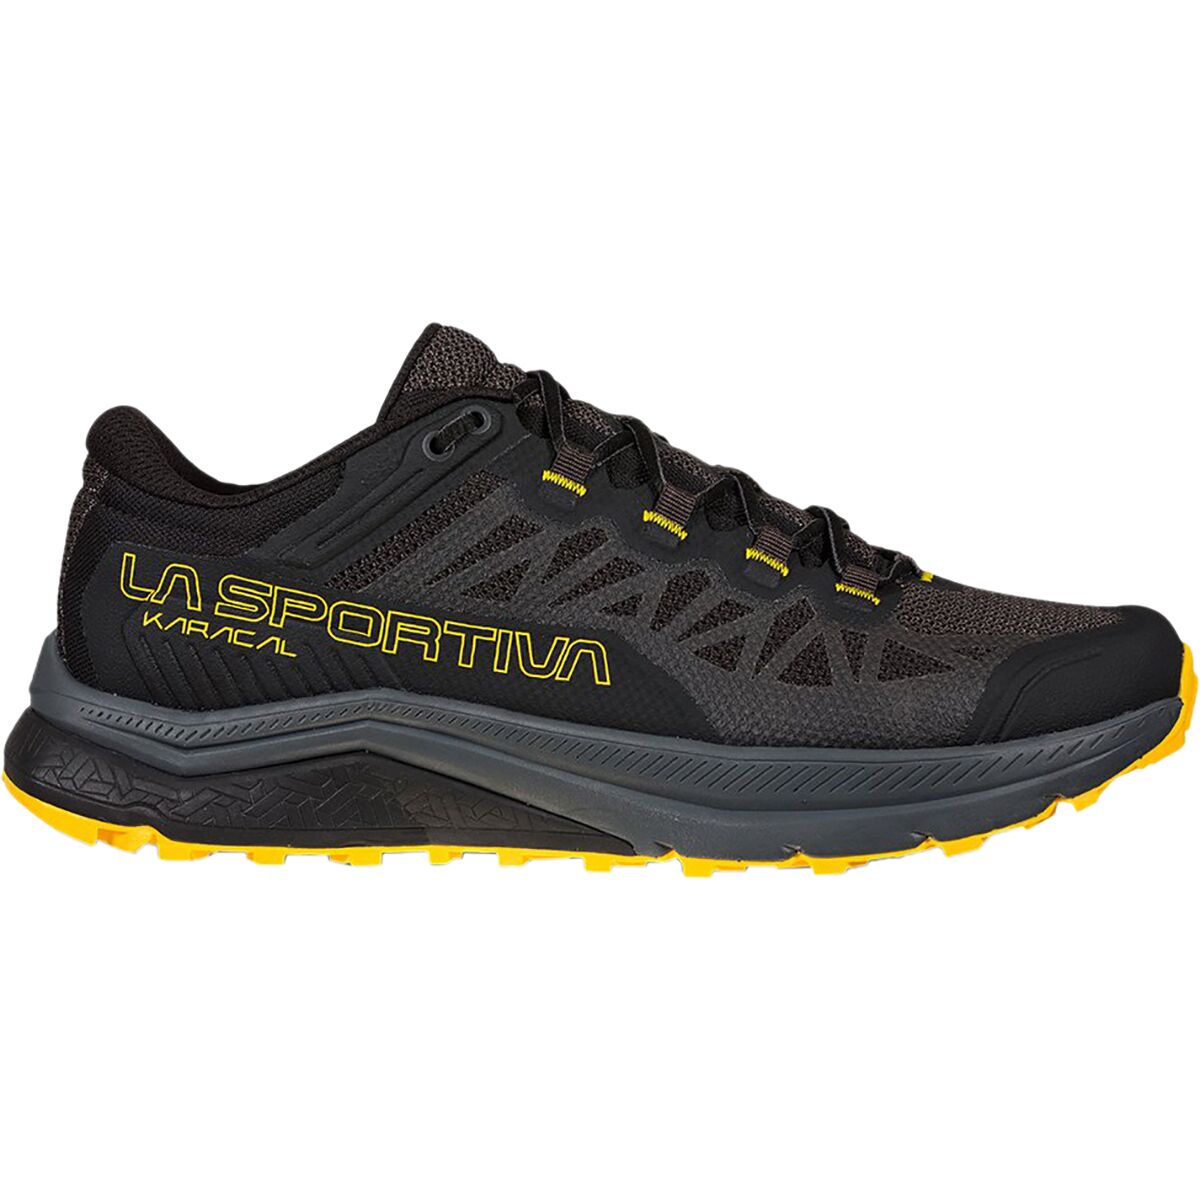 La Sportiva Karacal Trail Running Shoe - Men's